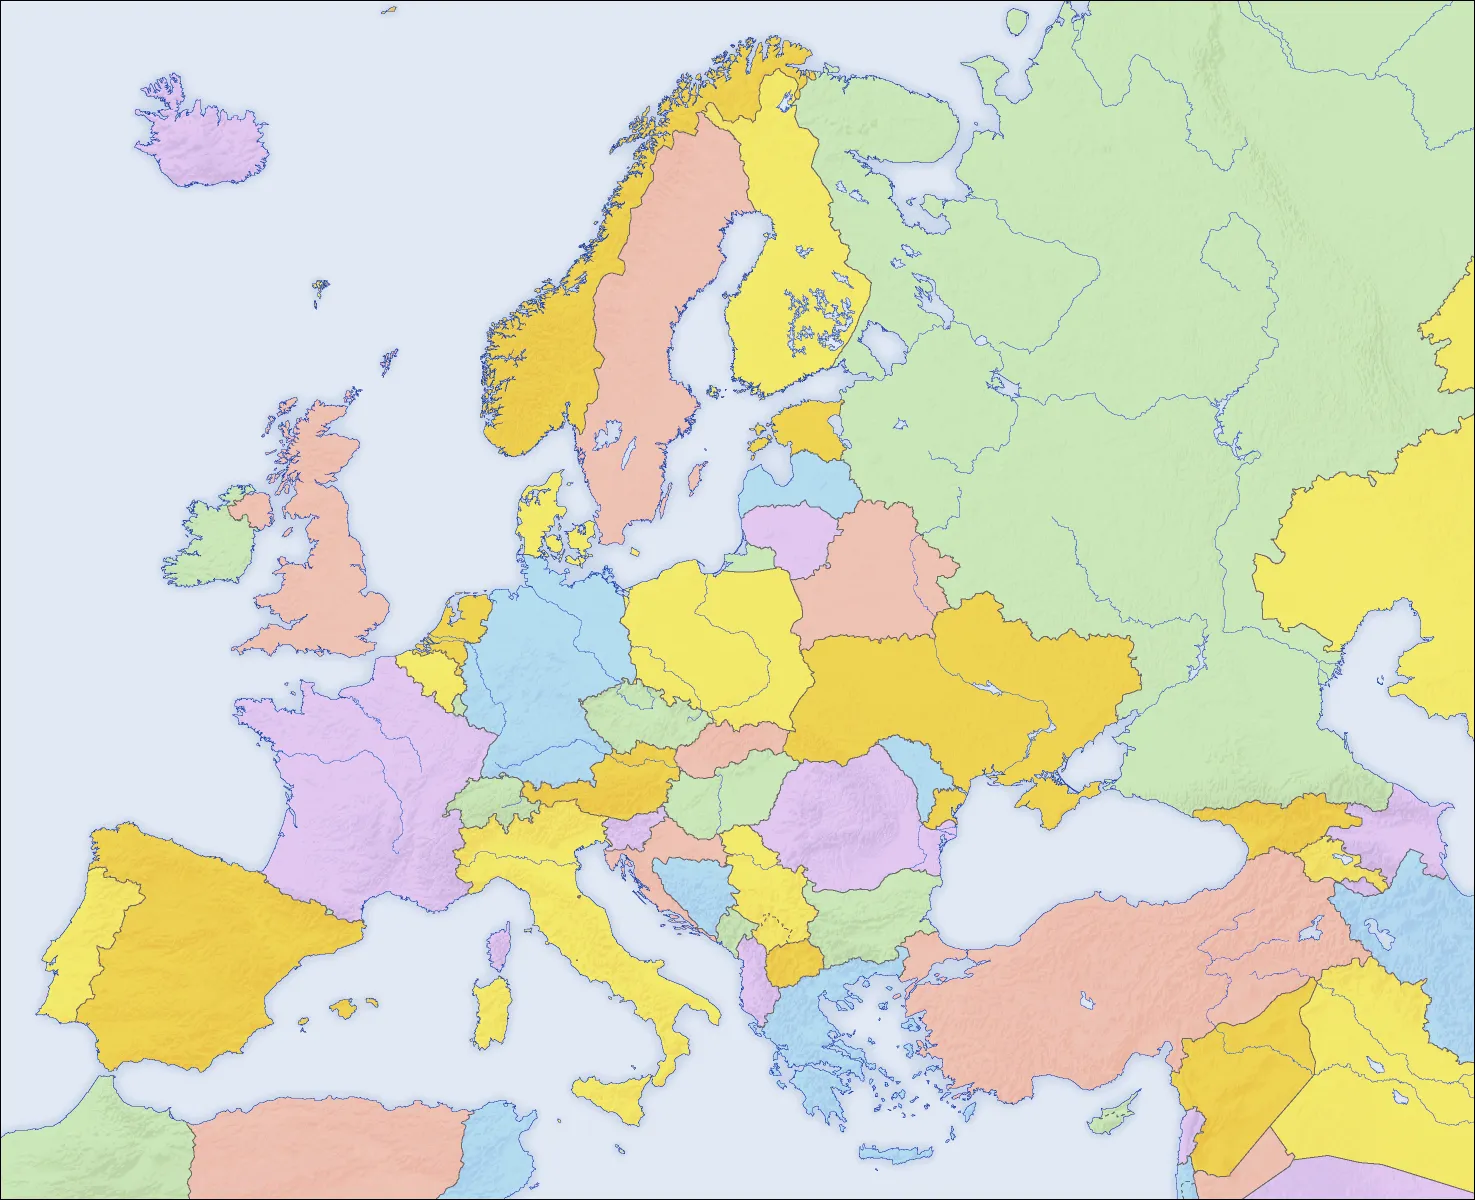 Mapa político mudo de Europa - Tamaño completo